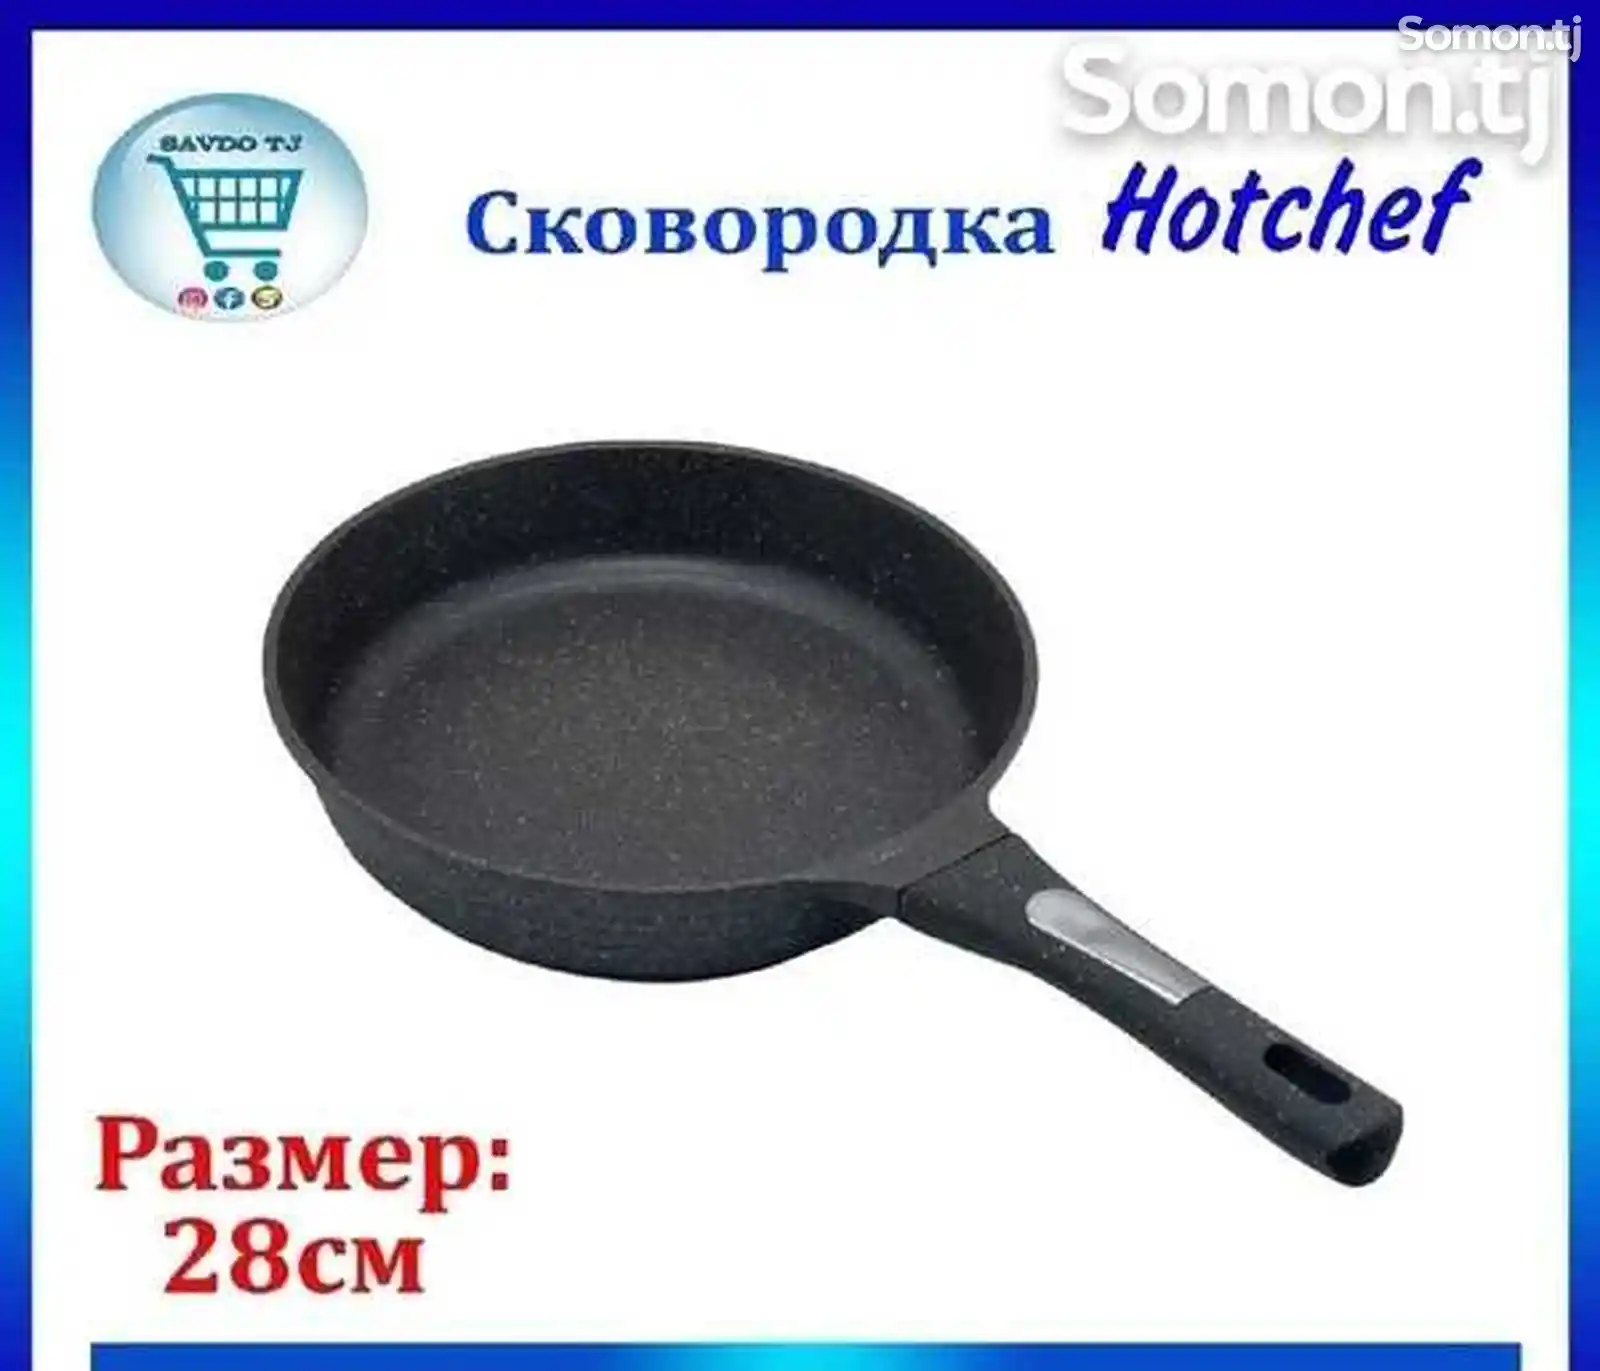 Сковородка Hotchef-2